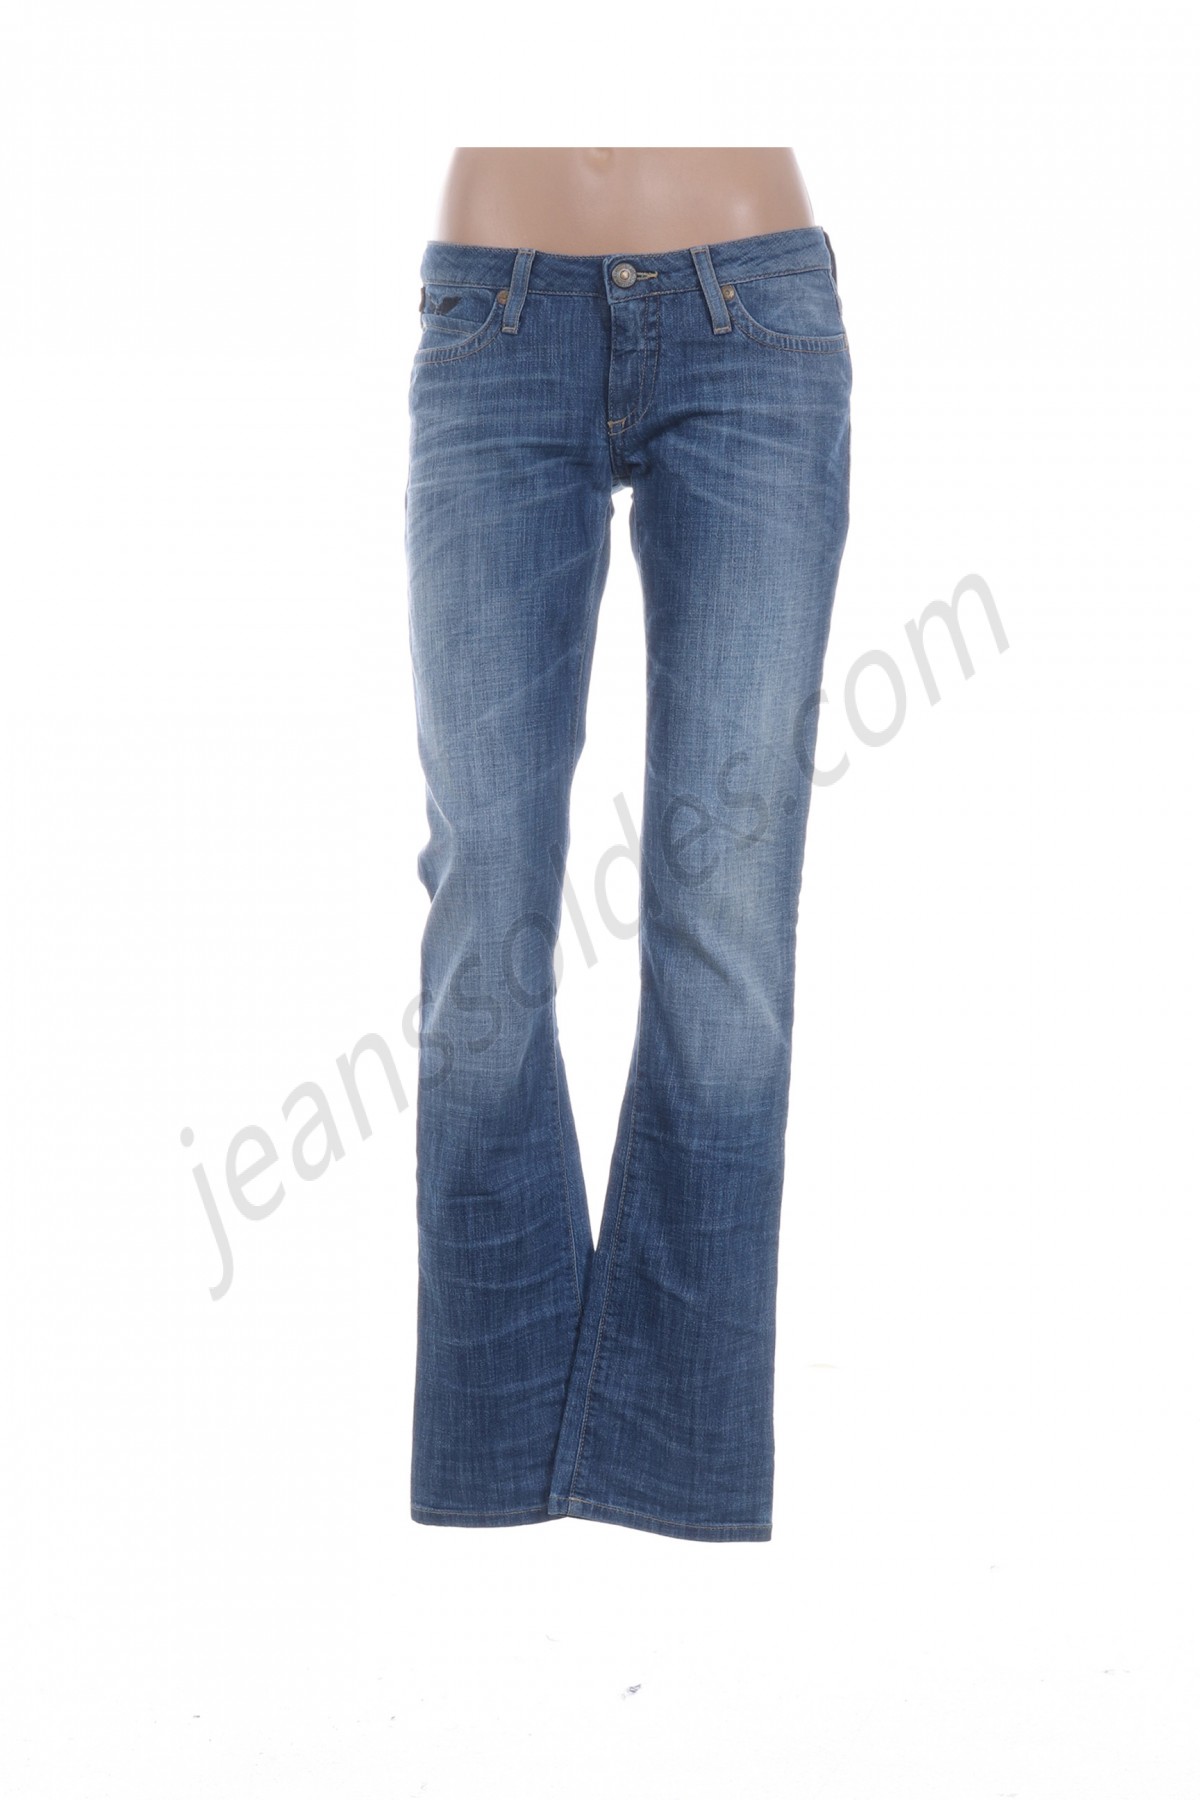 robin's jean-Jeans coupe droite prix d’amis - -0